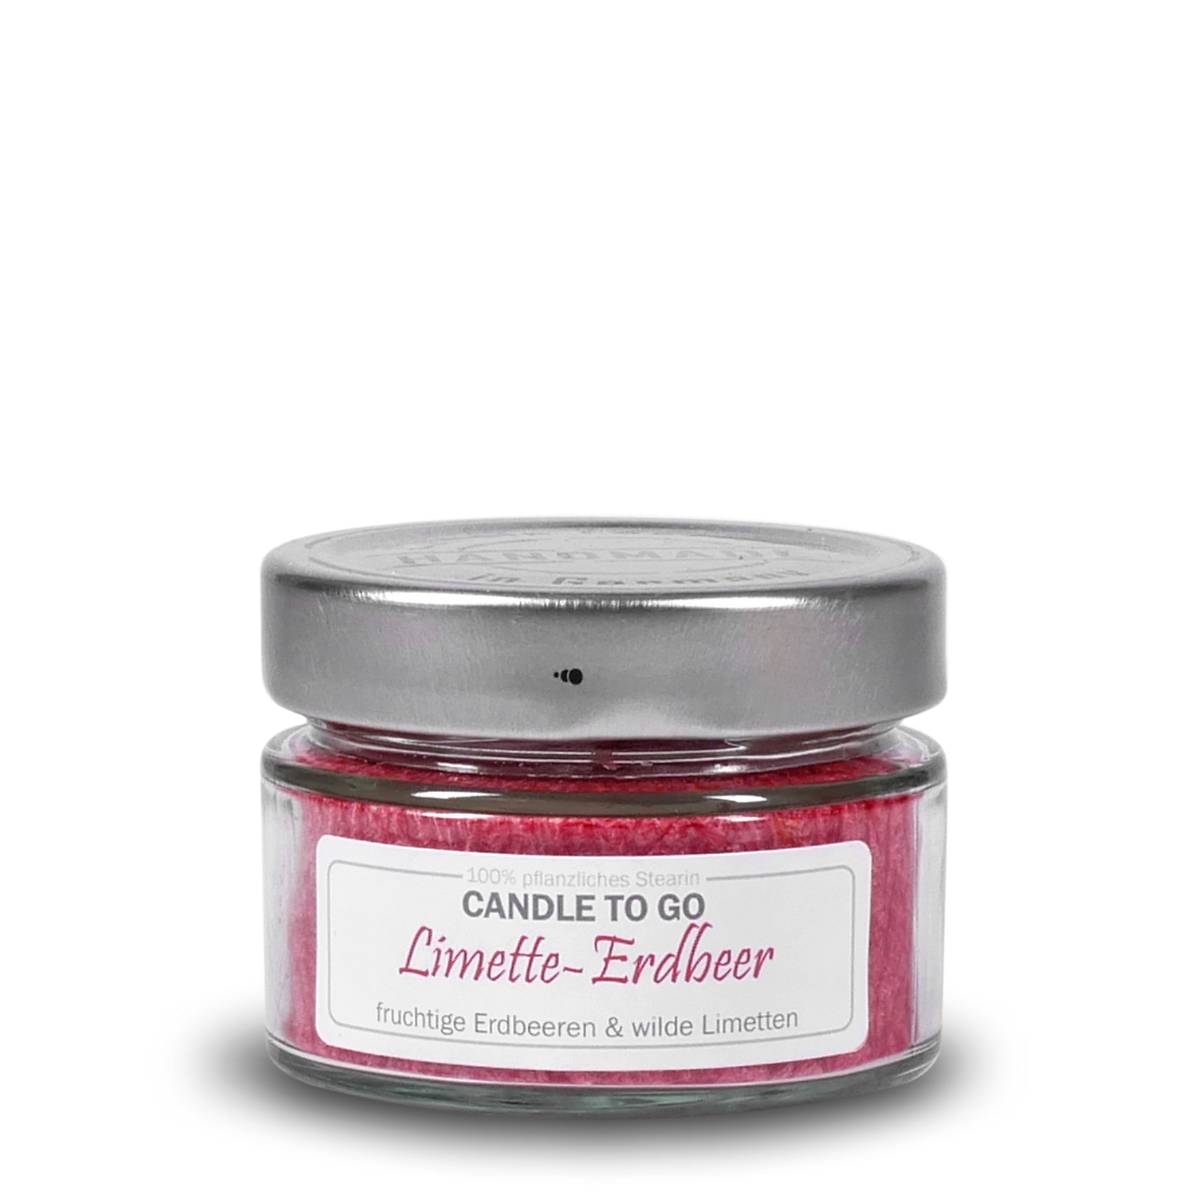 Limette Erdbeer - Candle to Go die Duftkerze für unterwegs